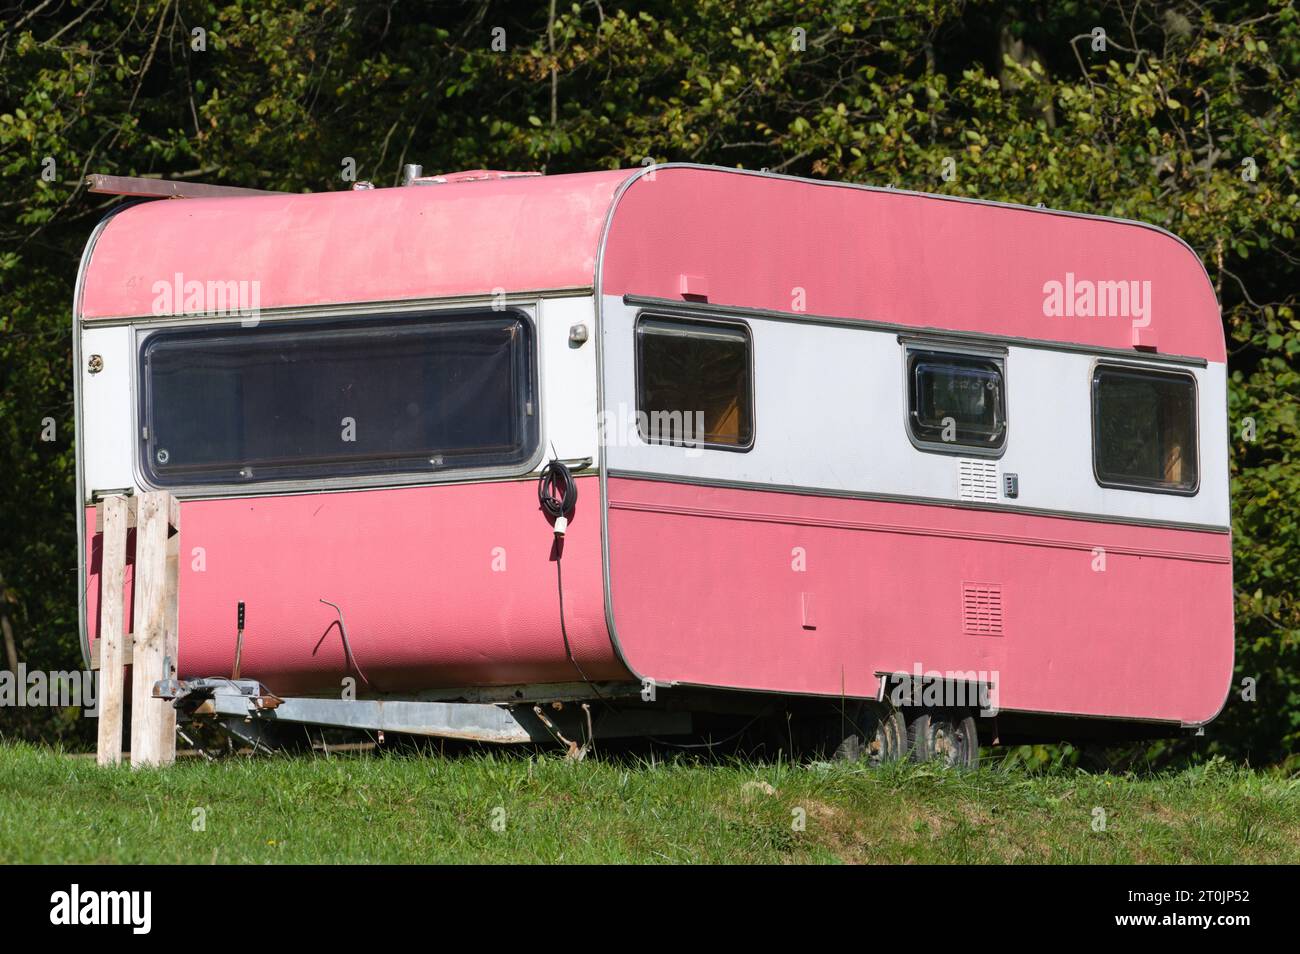 Caravane rose vintage au camping. Très inhabituel et drôle. Banque D'Images